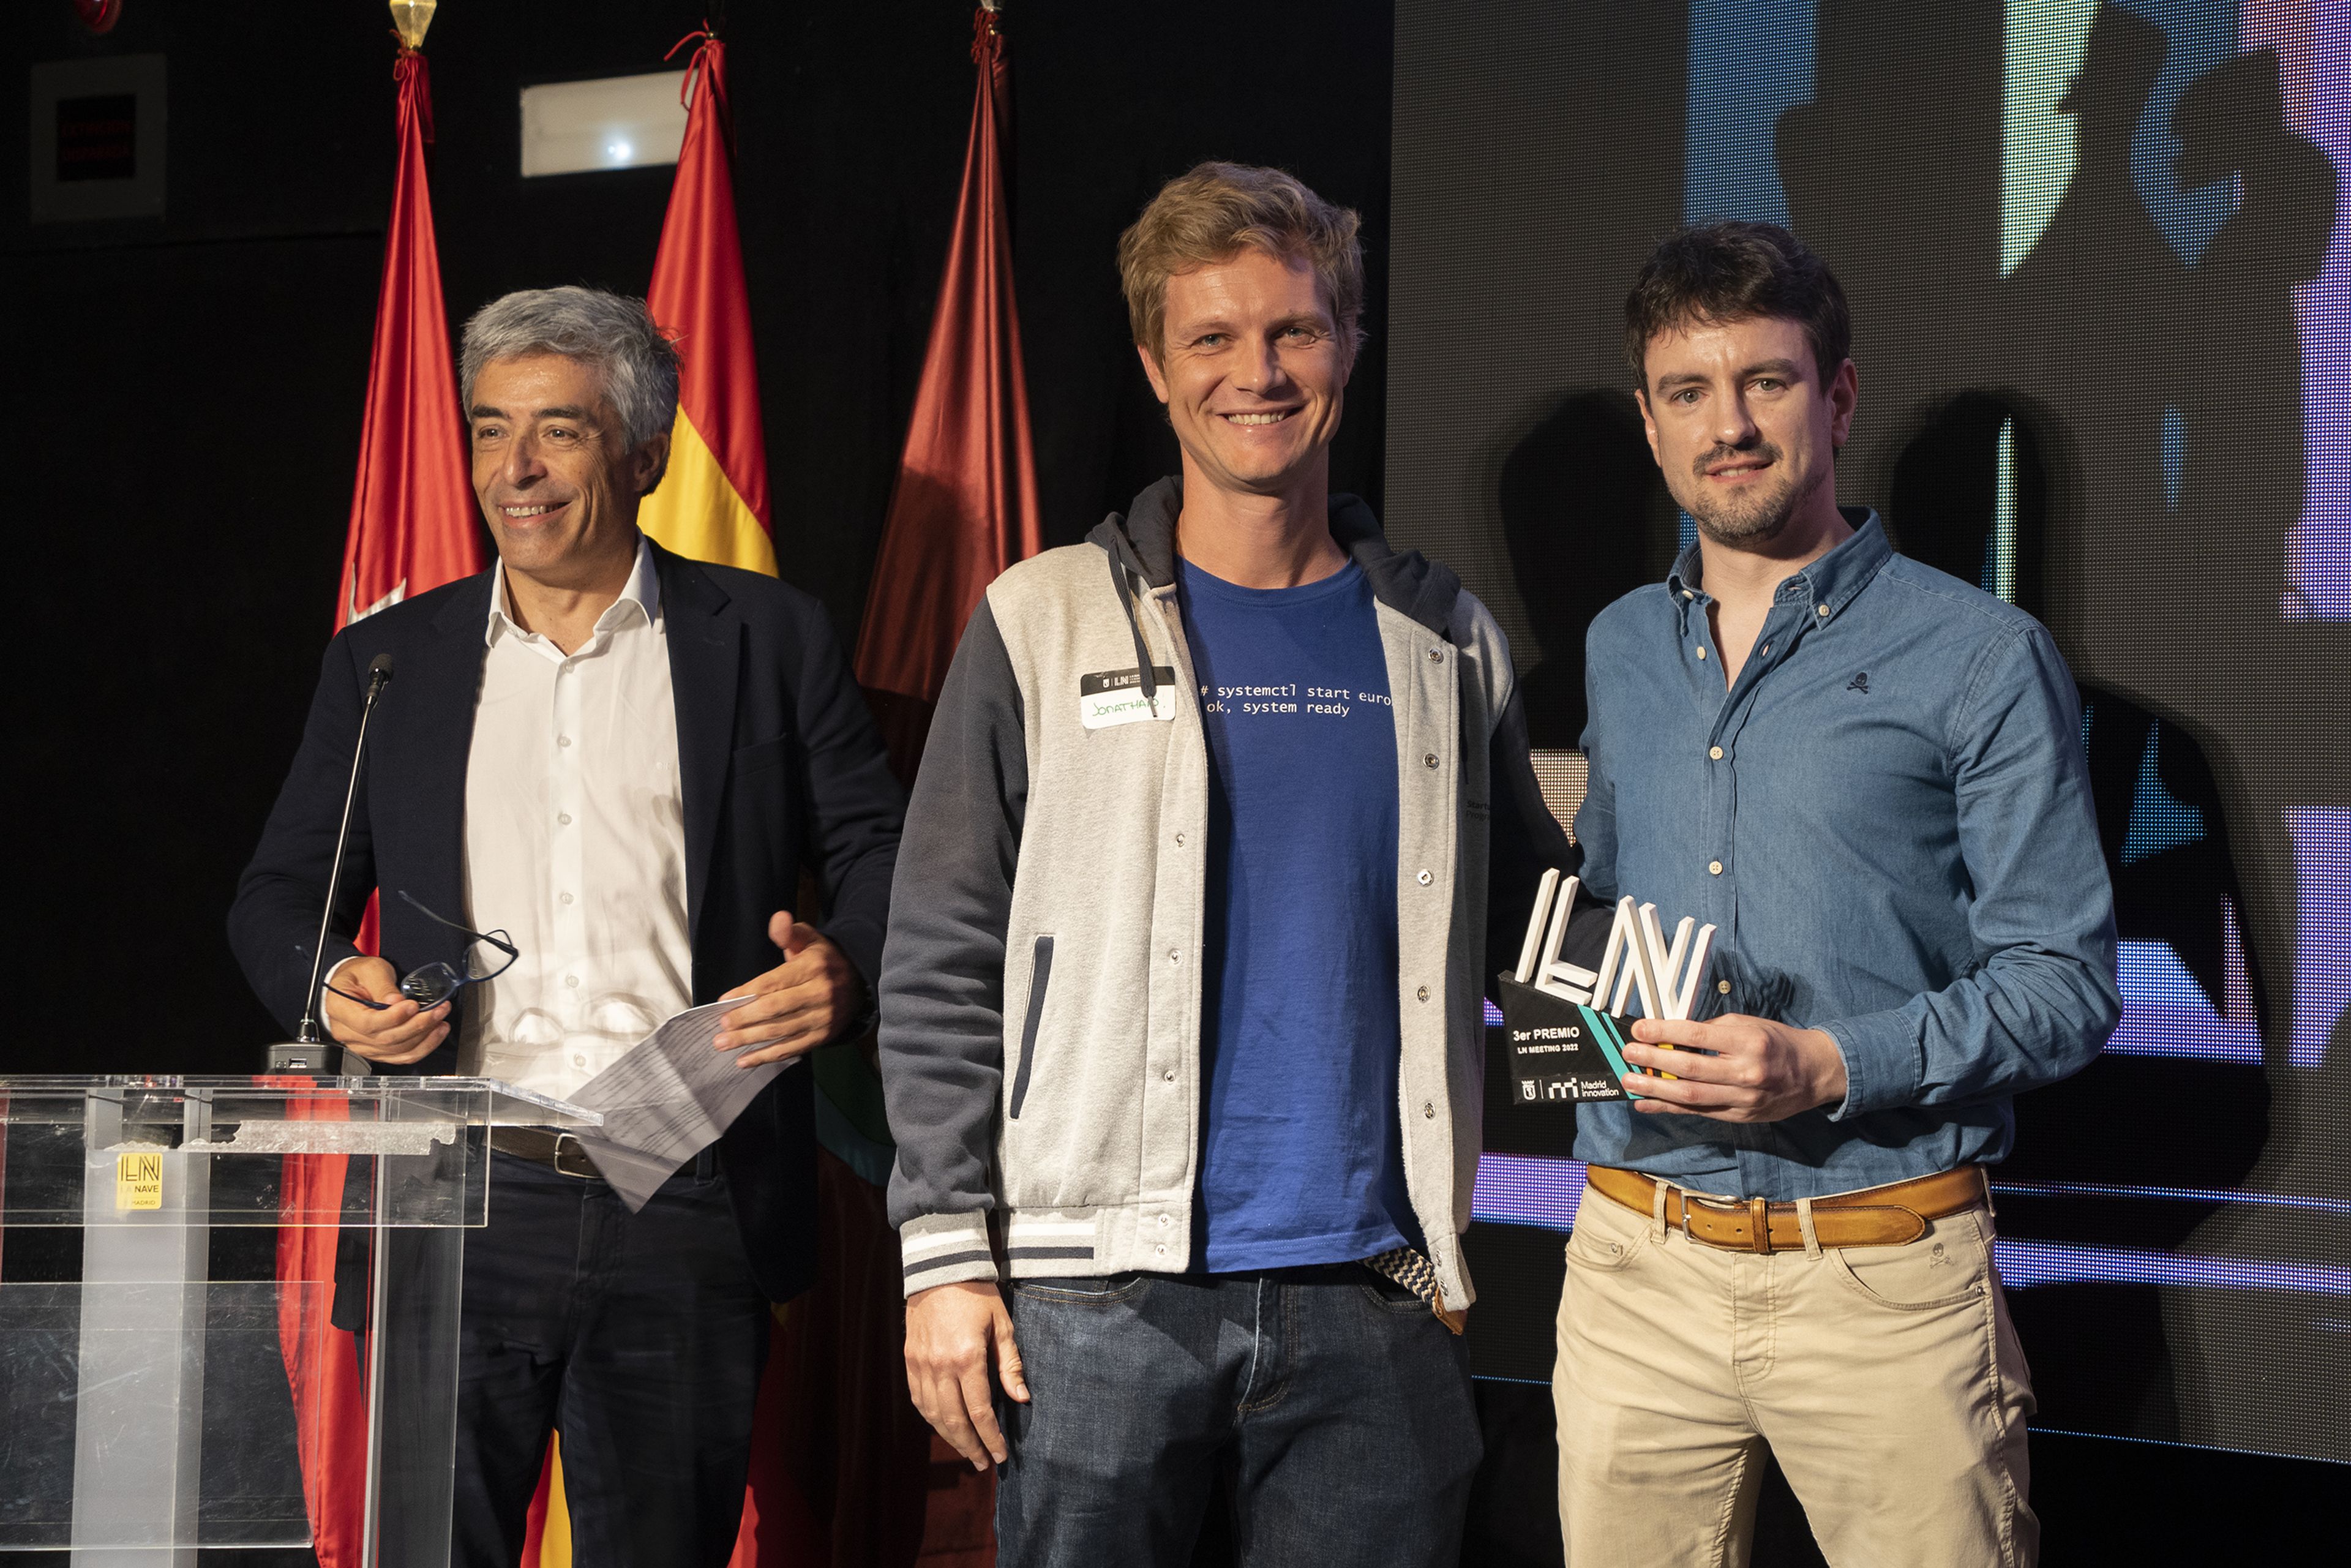 En el centro, Jonathan Clarke entrega un premio a Abel Rodríguez, de Singulary Experts (derecha) en el LN Meeting 2022. A la izquierda, Fernando Herrero, director general de innovación y emprendimiento del Ayuntamiento de Madrid.